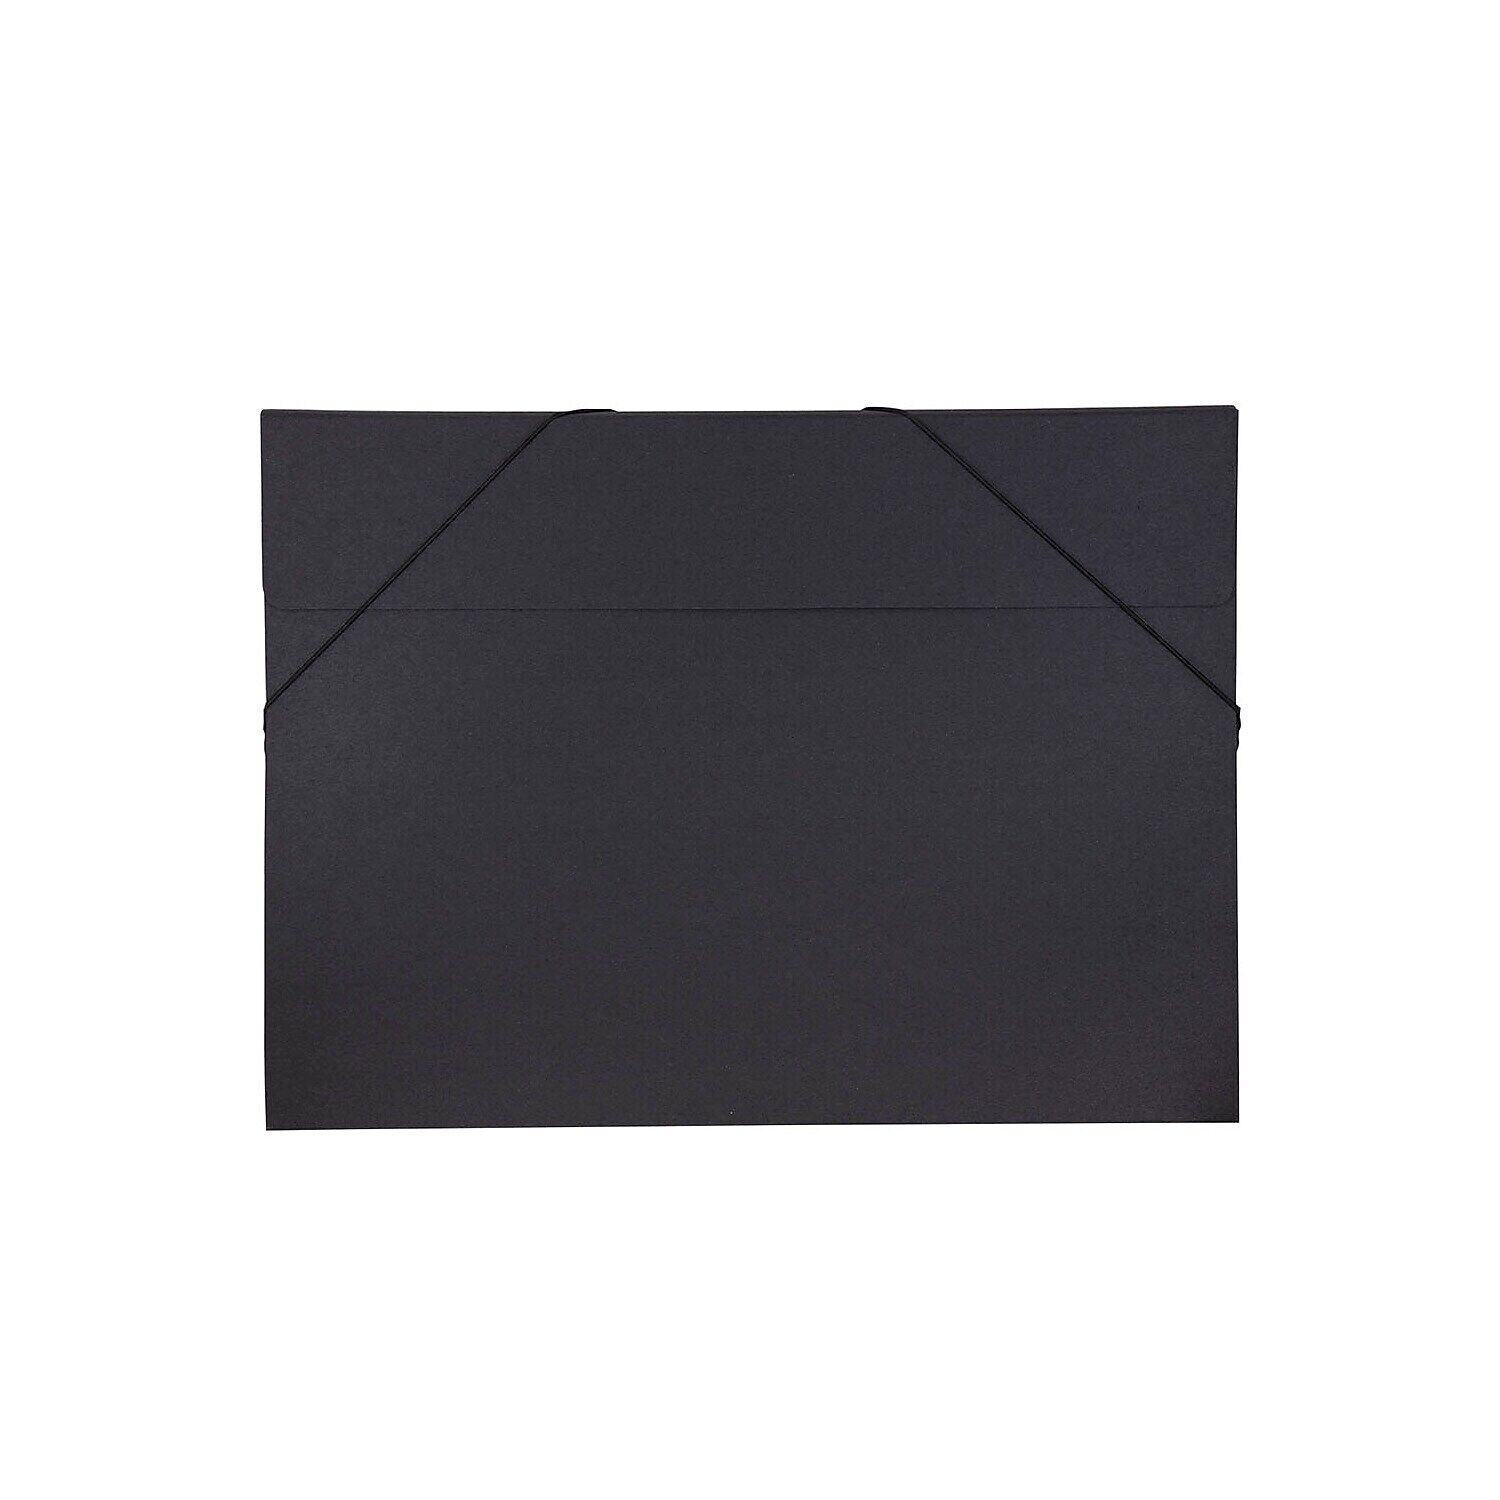 JAM Paper Kraft Portfolio with Elastic Closure Jumbo 14 1/2 x 19 1/2 x 1/2 Black